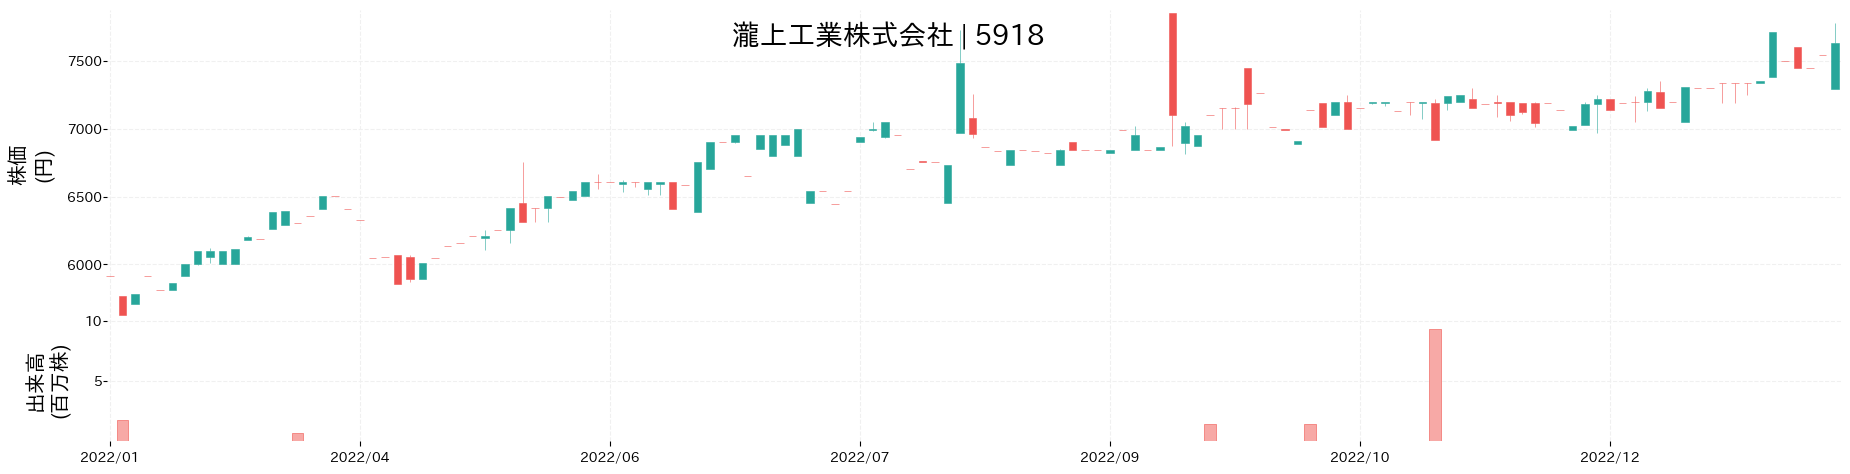 瀧上工業の株価推移(2022)